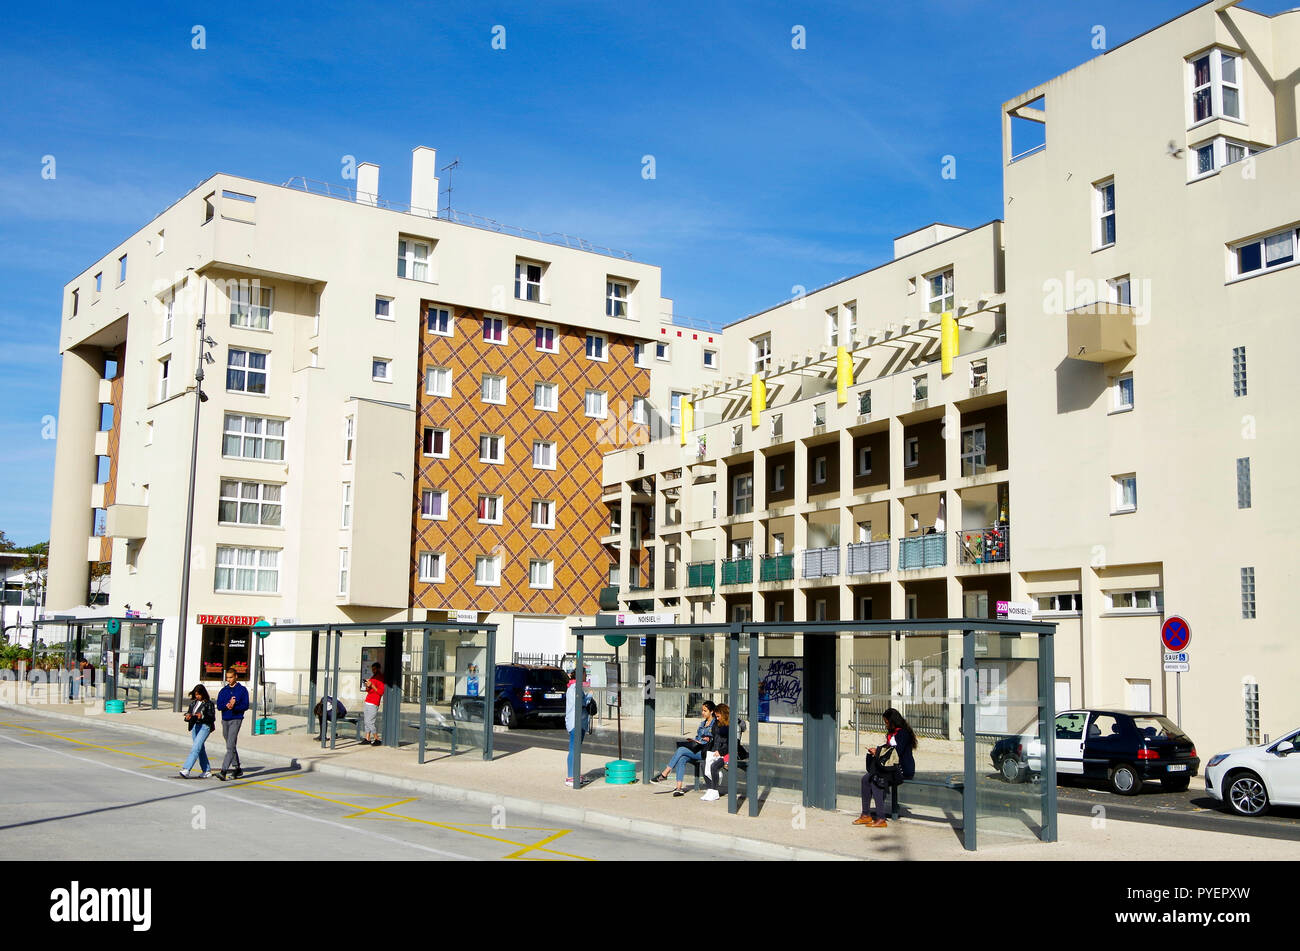 Clúster de 6 y 7 plantas de edificios de apartamentos, enfrente de la estación de RER, centro de Noisiel, pequeña ciudad en el sur-este de los suburbios de París Foto de stock